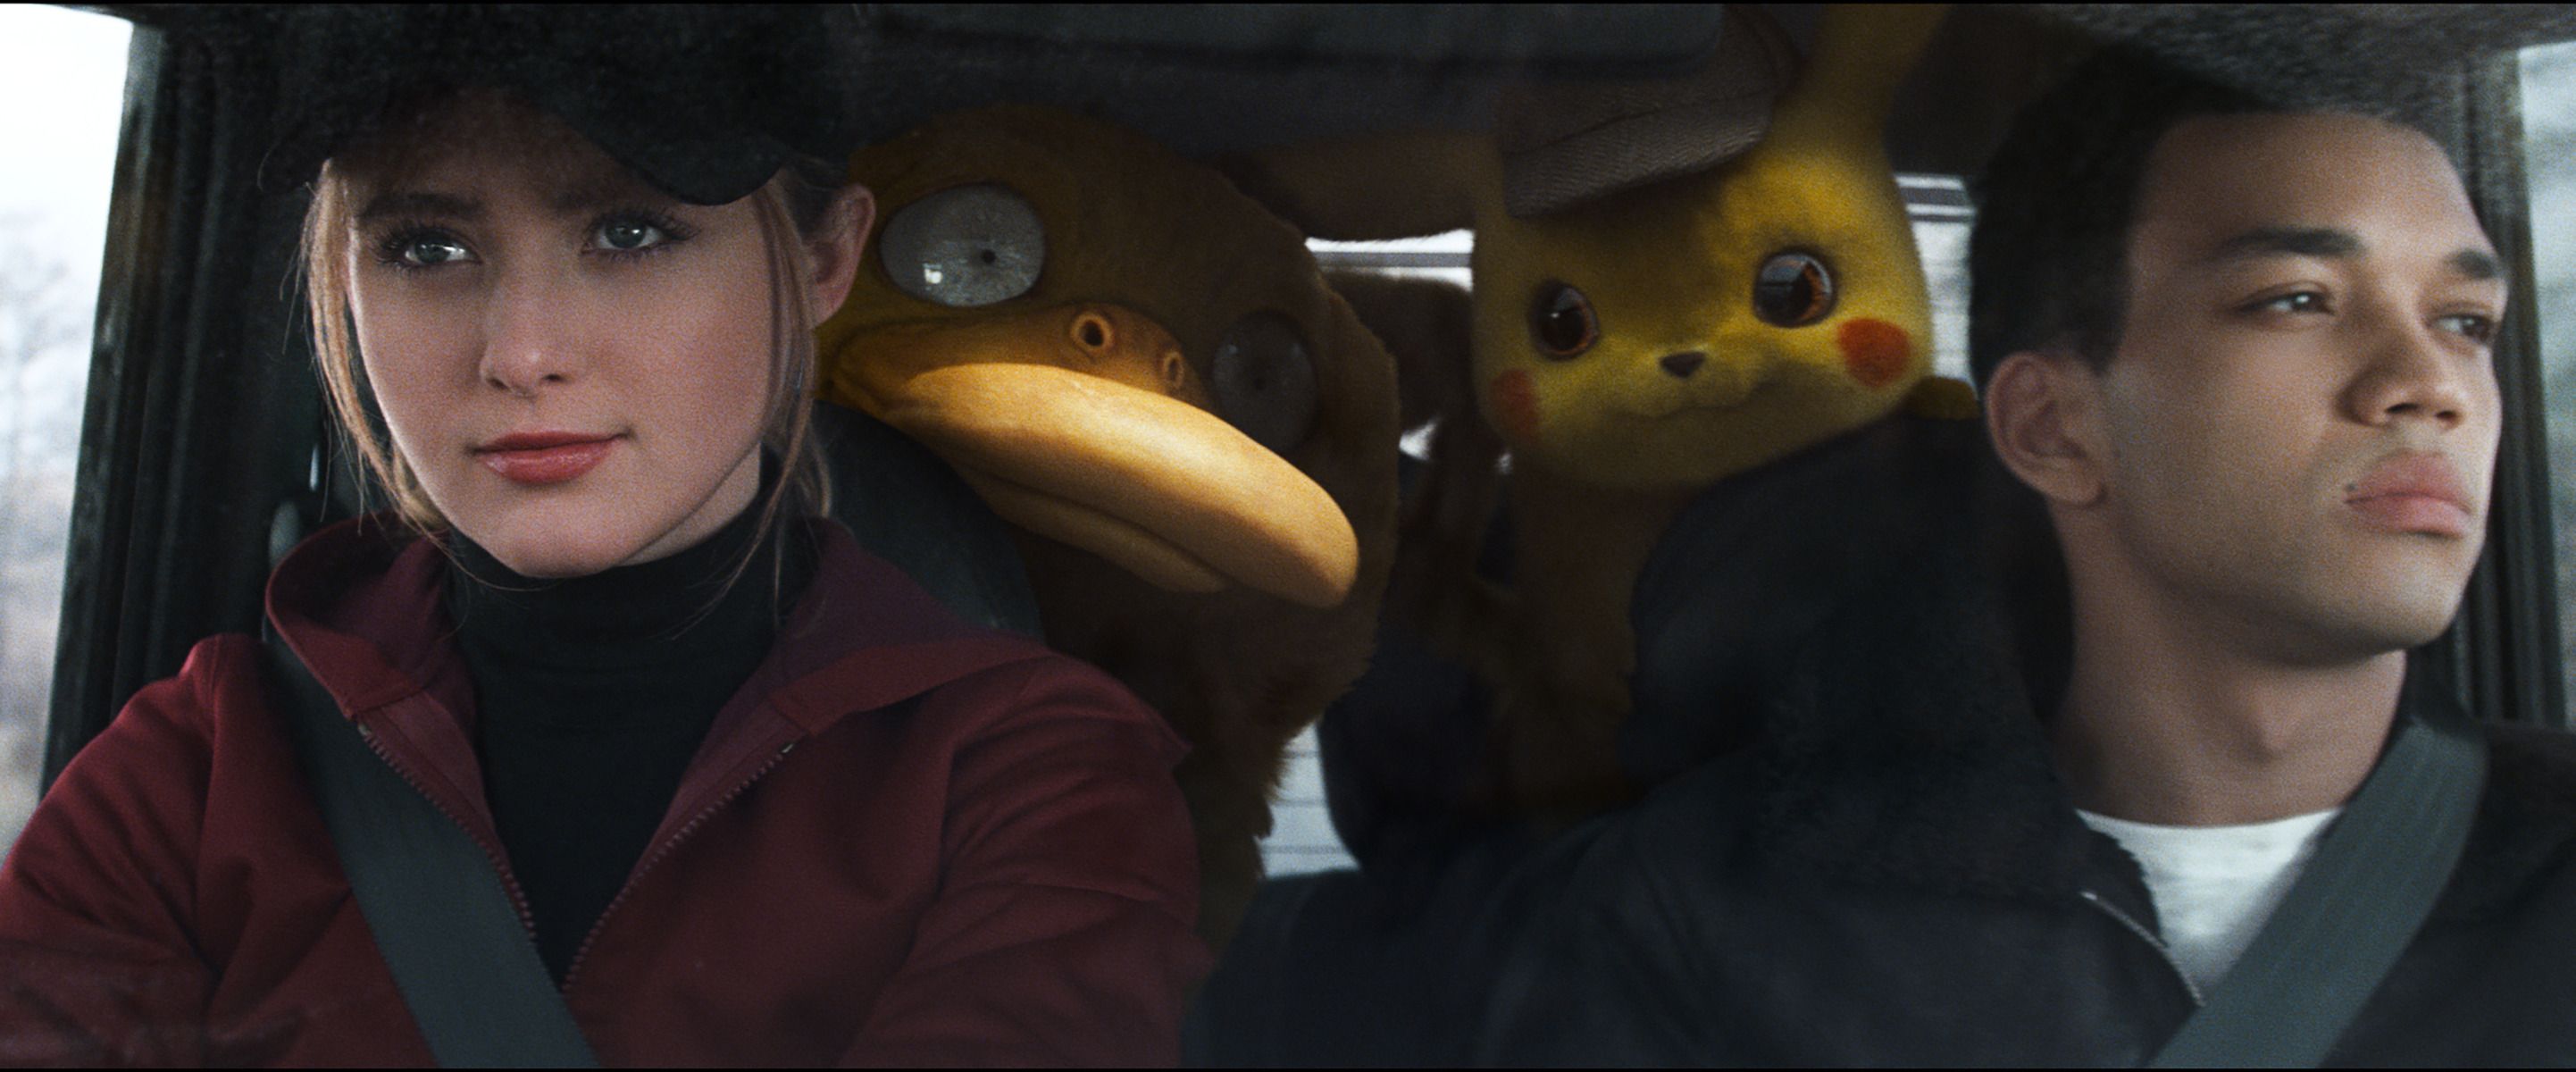 Image result for pokÃ©mon detective pikachu cast